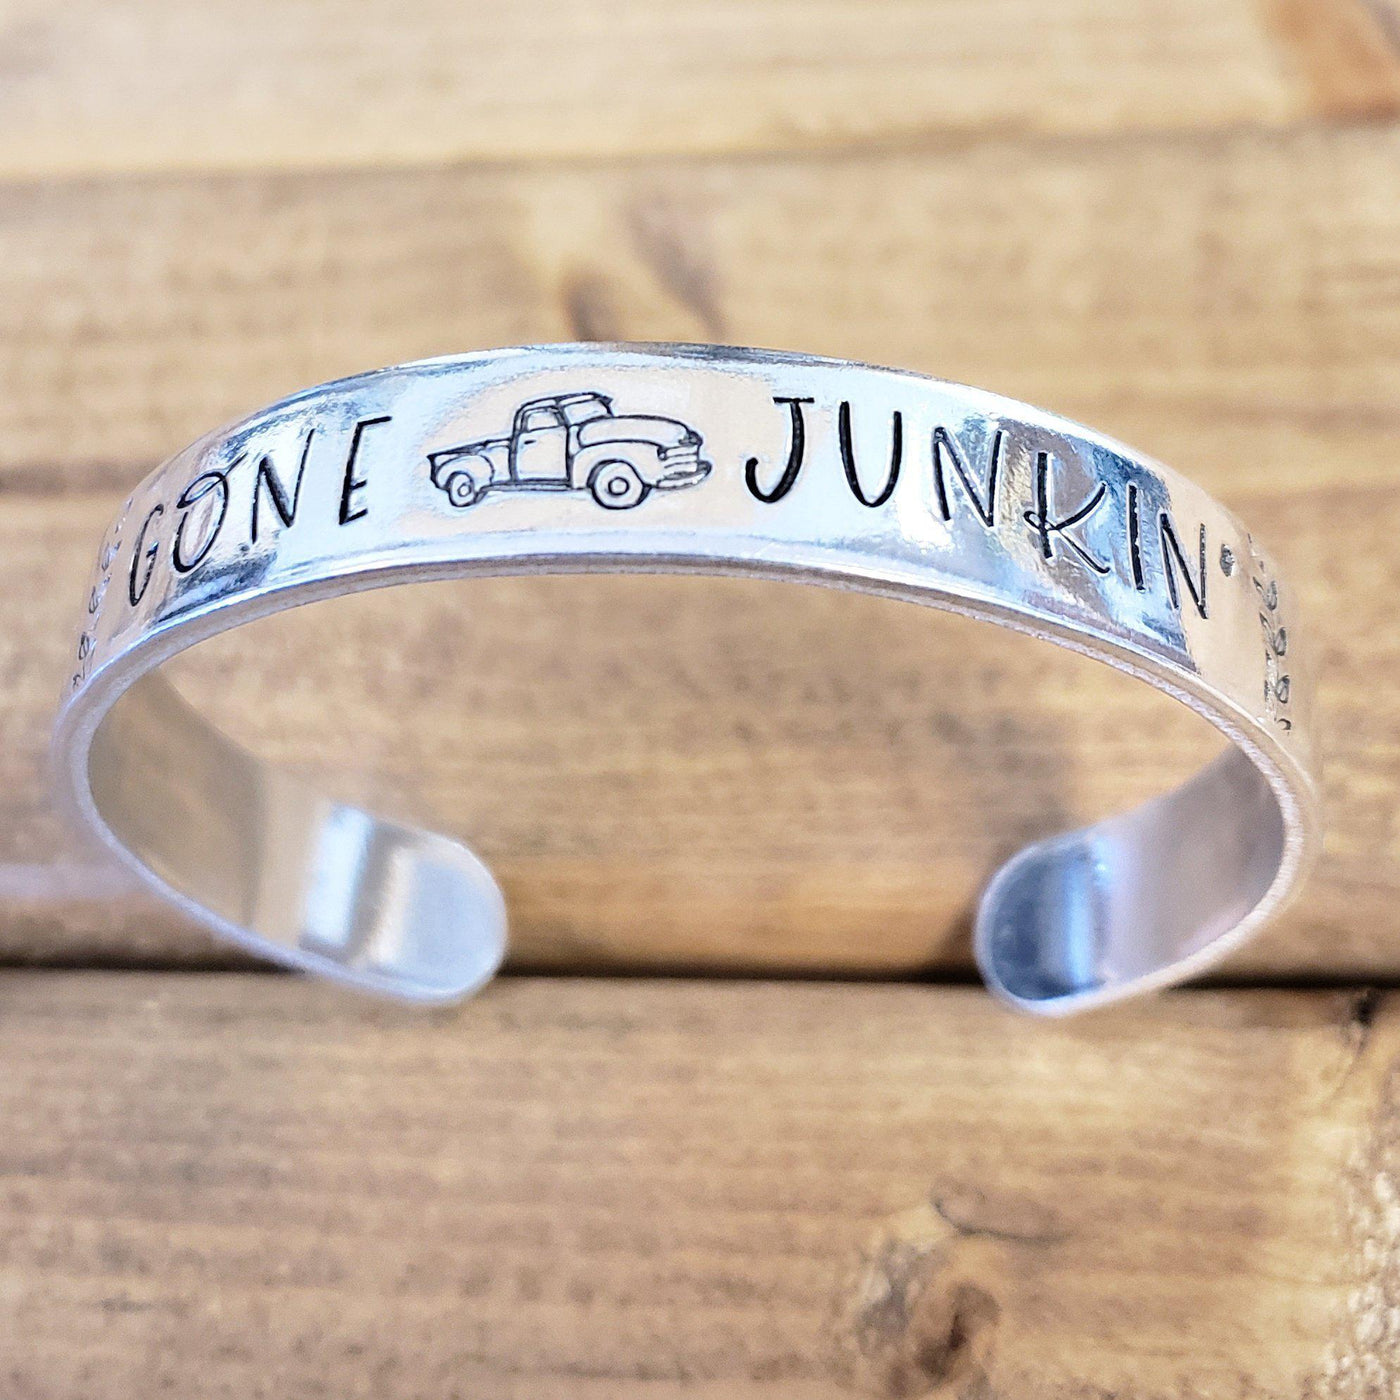 Gone Junkin' | Cuff Bracelets - Little Blue Bus Jewelry